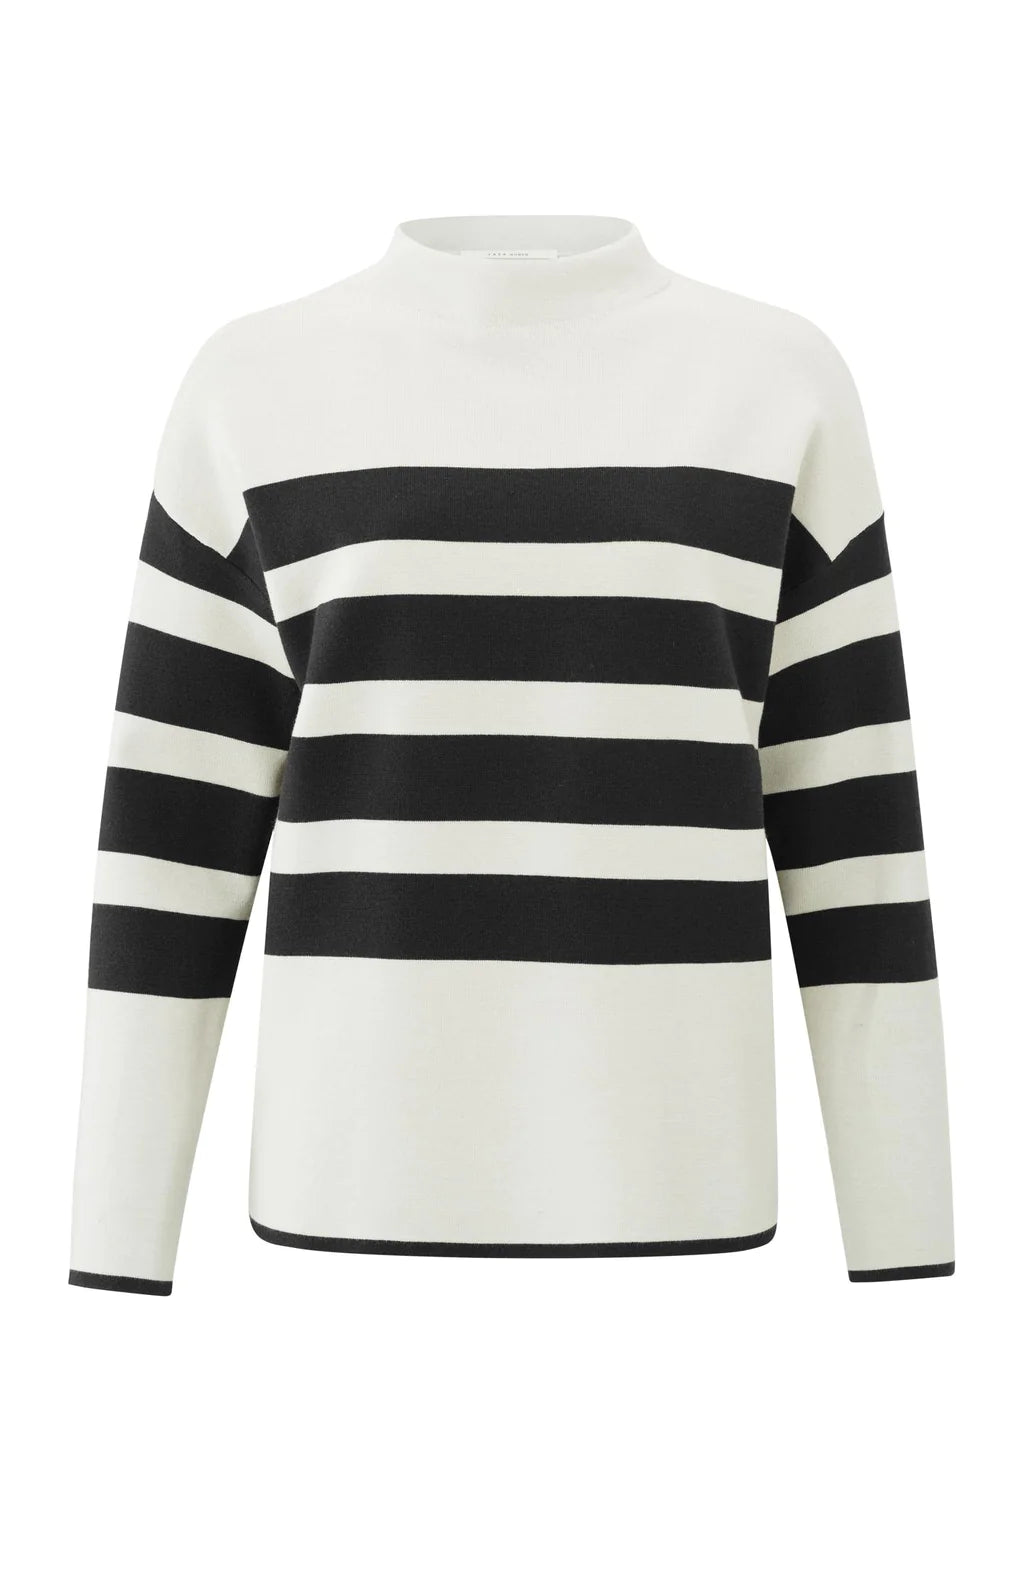 Stripe Sweater long sleeve